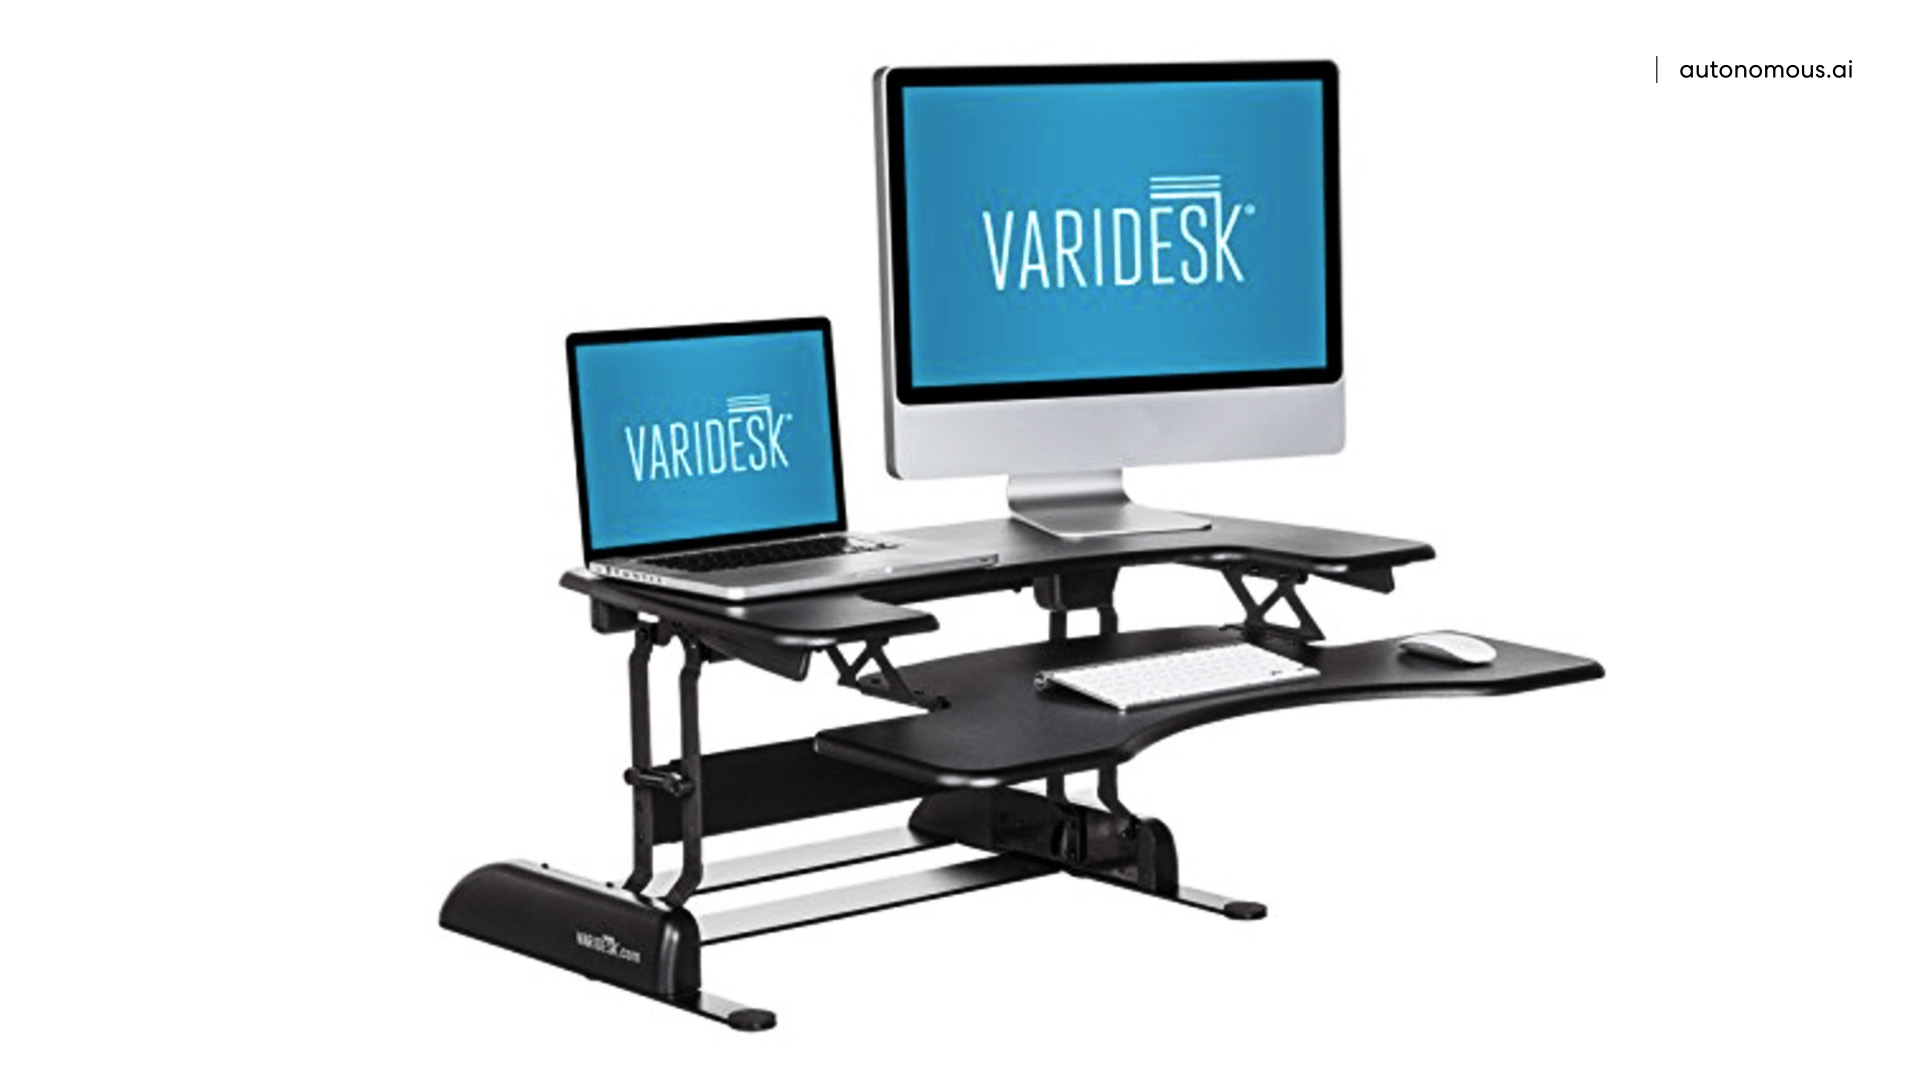 Varidesk height-adjustable standing desk